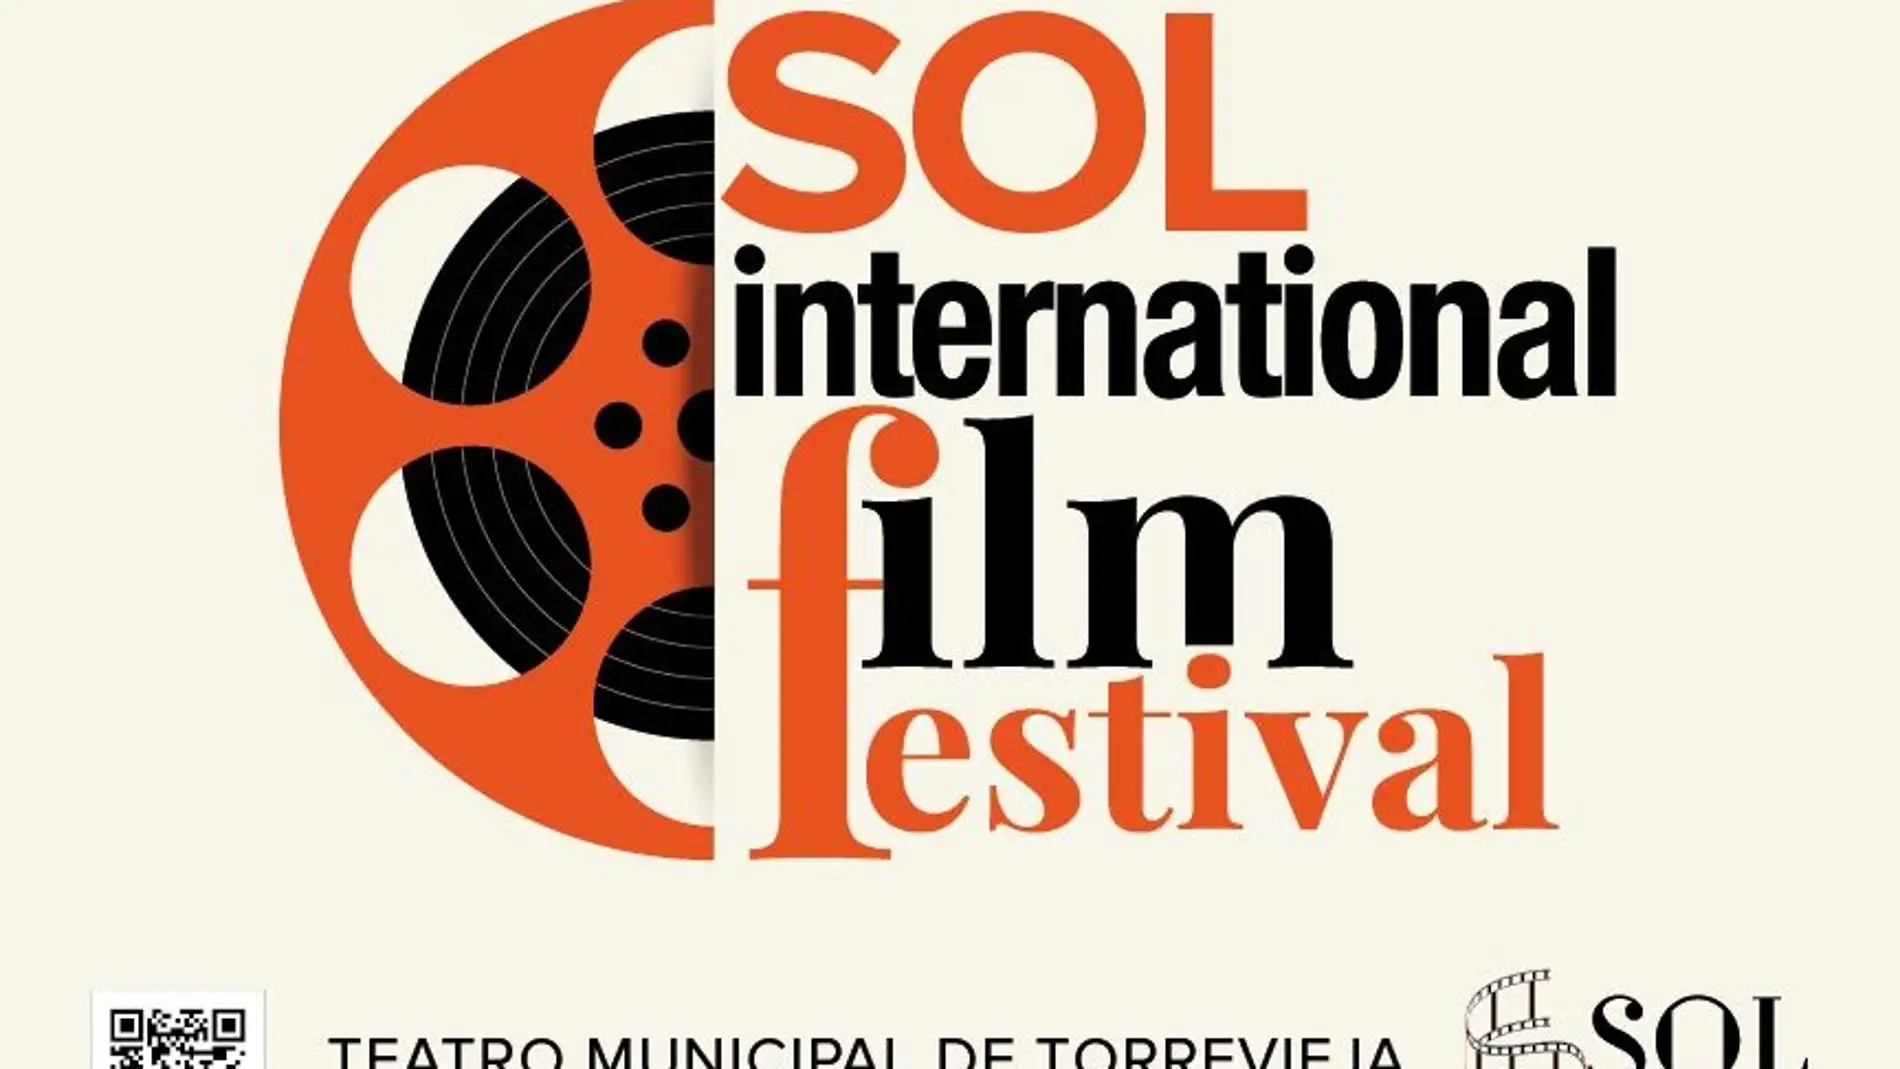 El teatro municipal de Torrevieja acoge del 1 al 4 de julio el "Sol international film festival" 